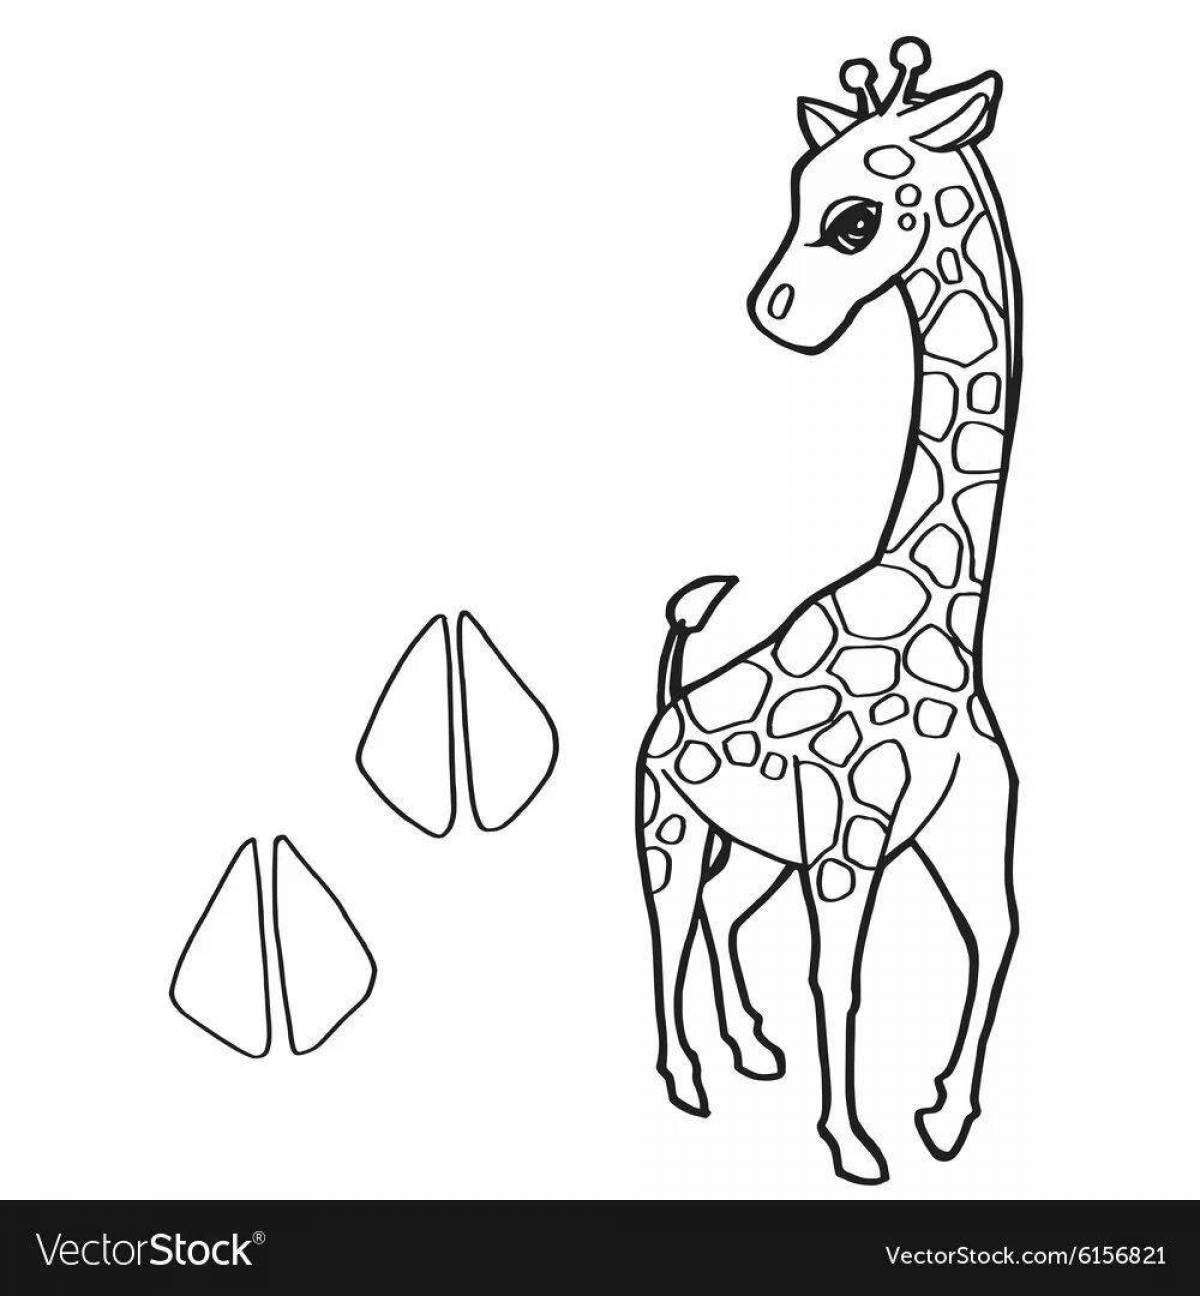 Анимированный жираф adopt mi coloring page